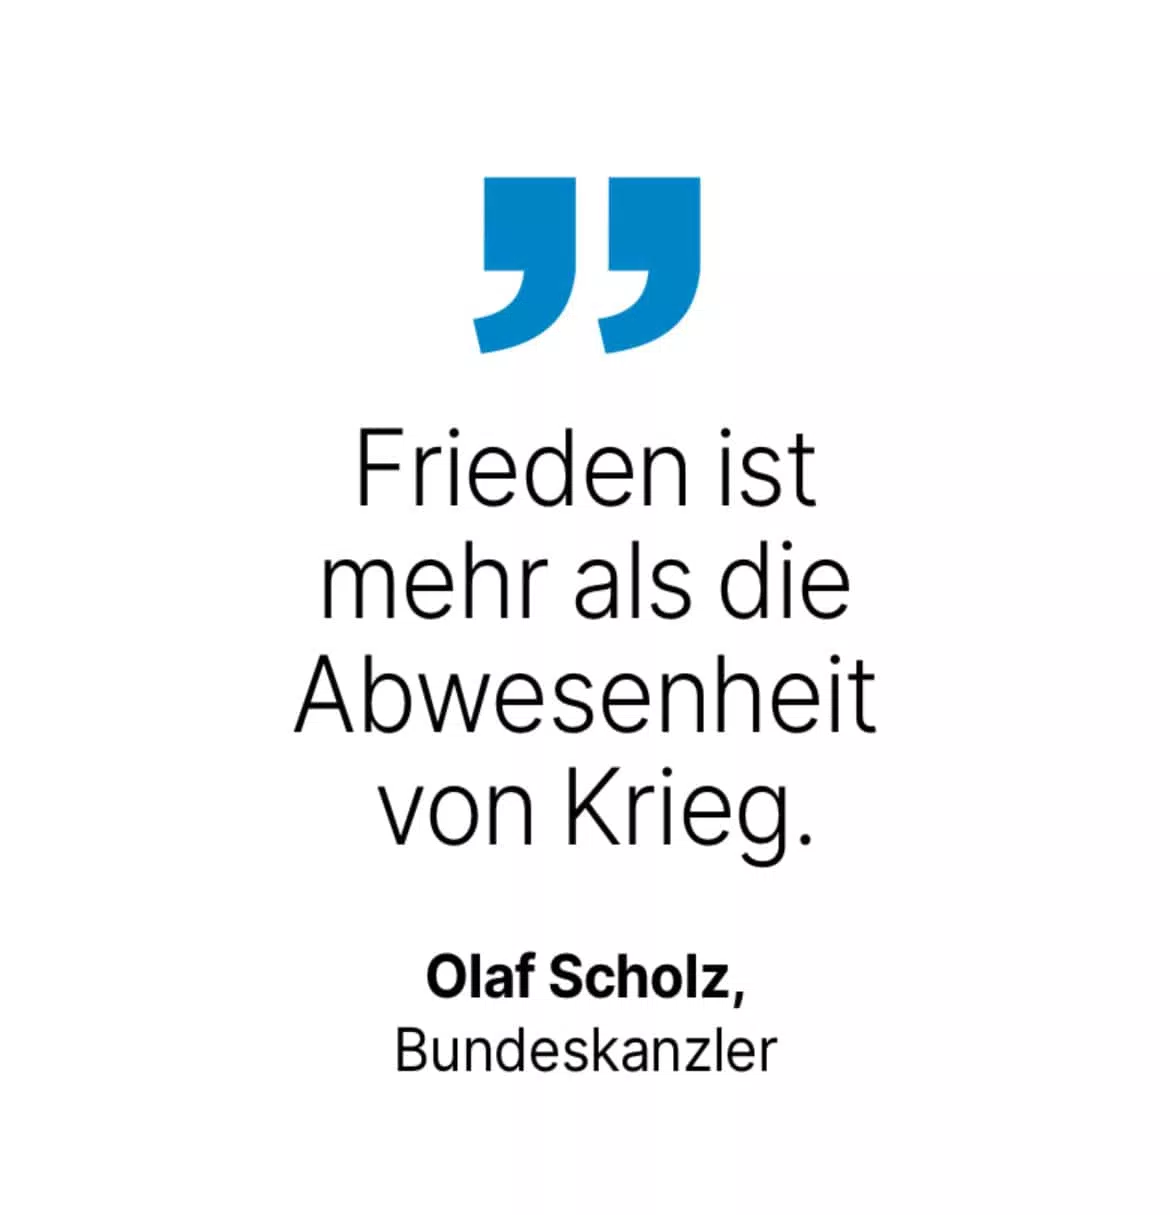 Olaf Scholz, Bundeskanzler: Frieden ist mehr als die Abwesenheit von Krieg.